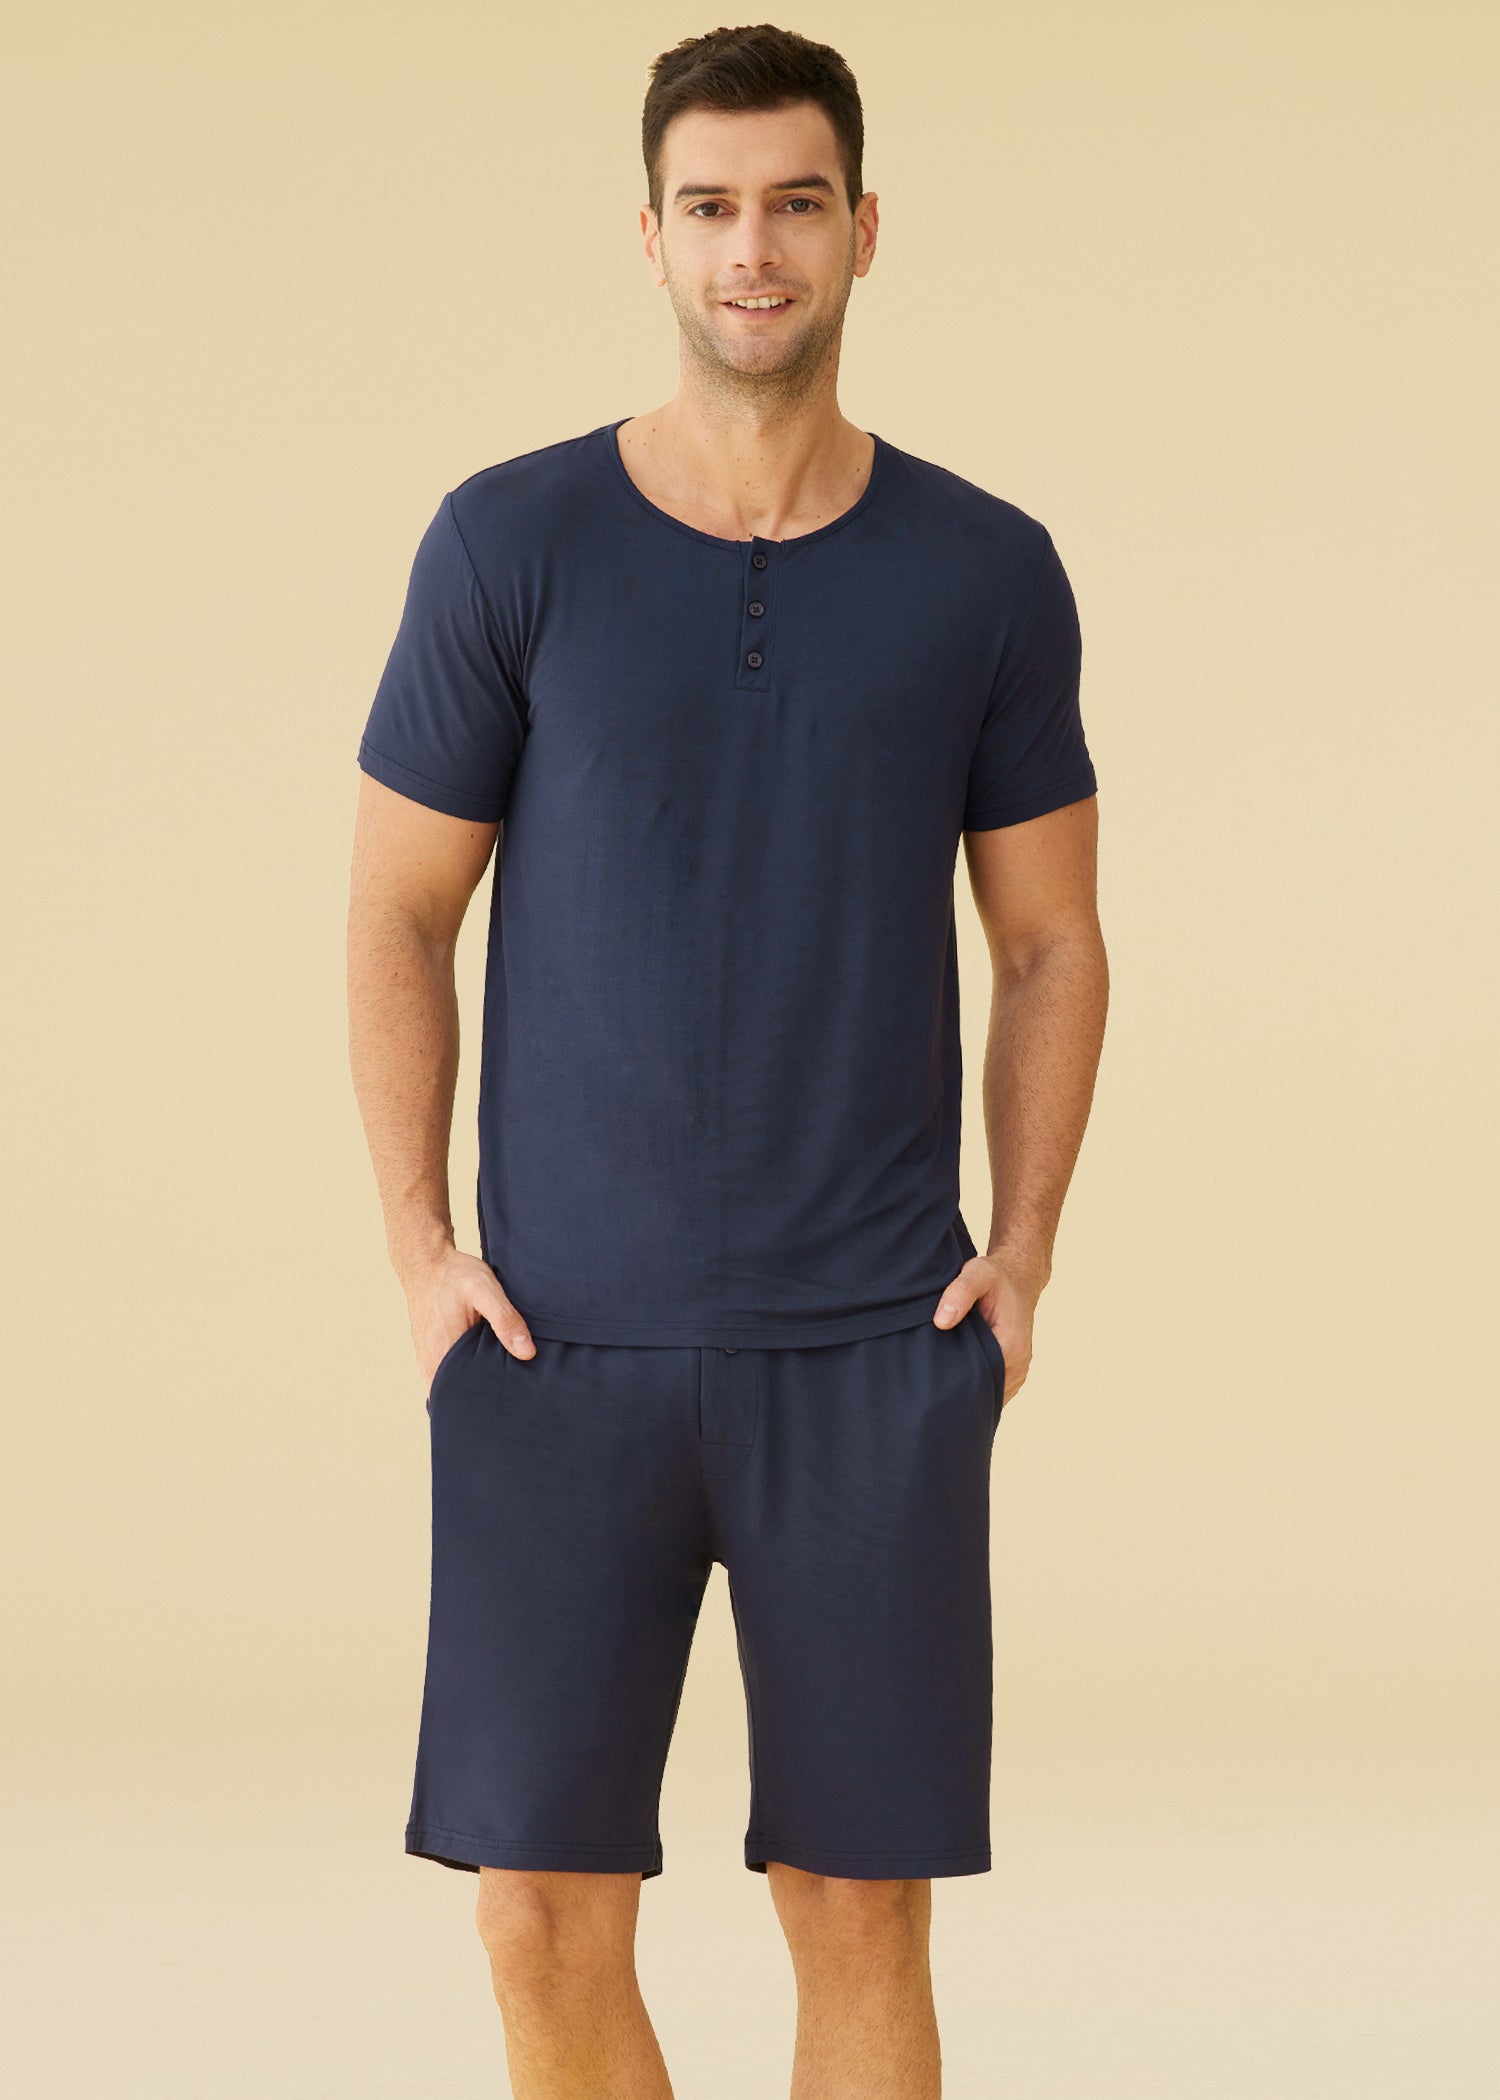 Men's Cotton Woven Short Sleepwear Pajama Set – Latuza